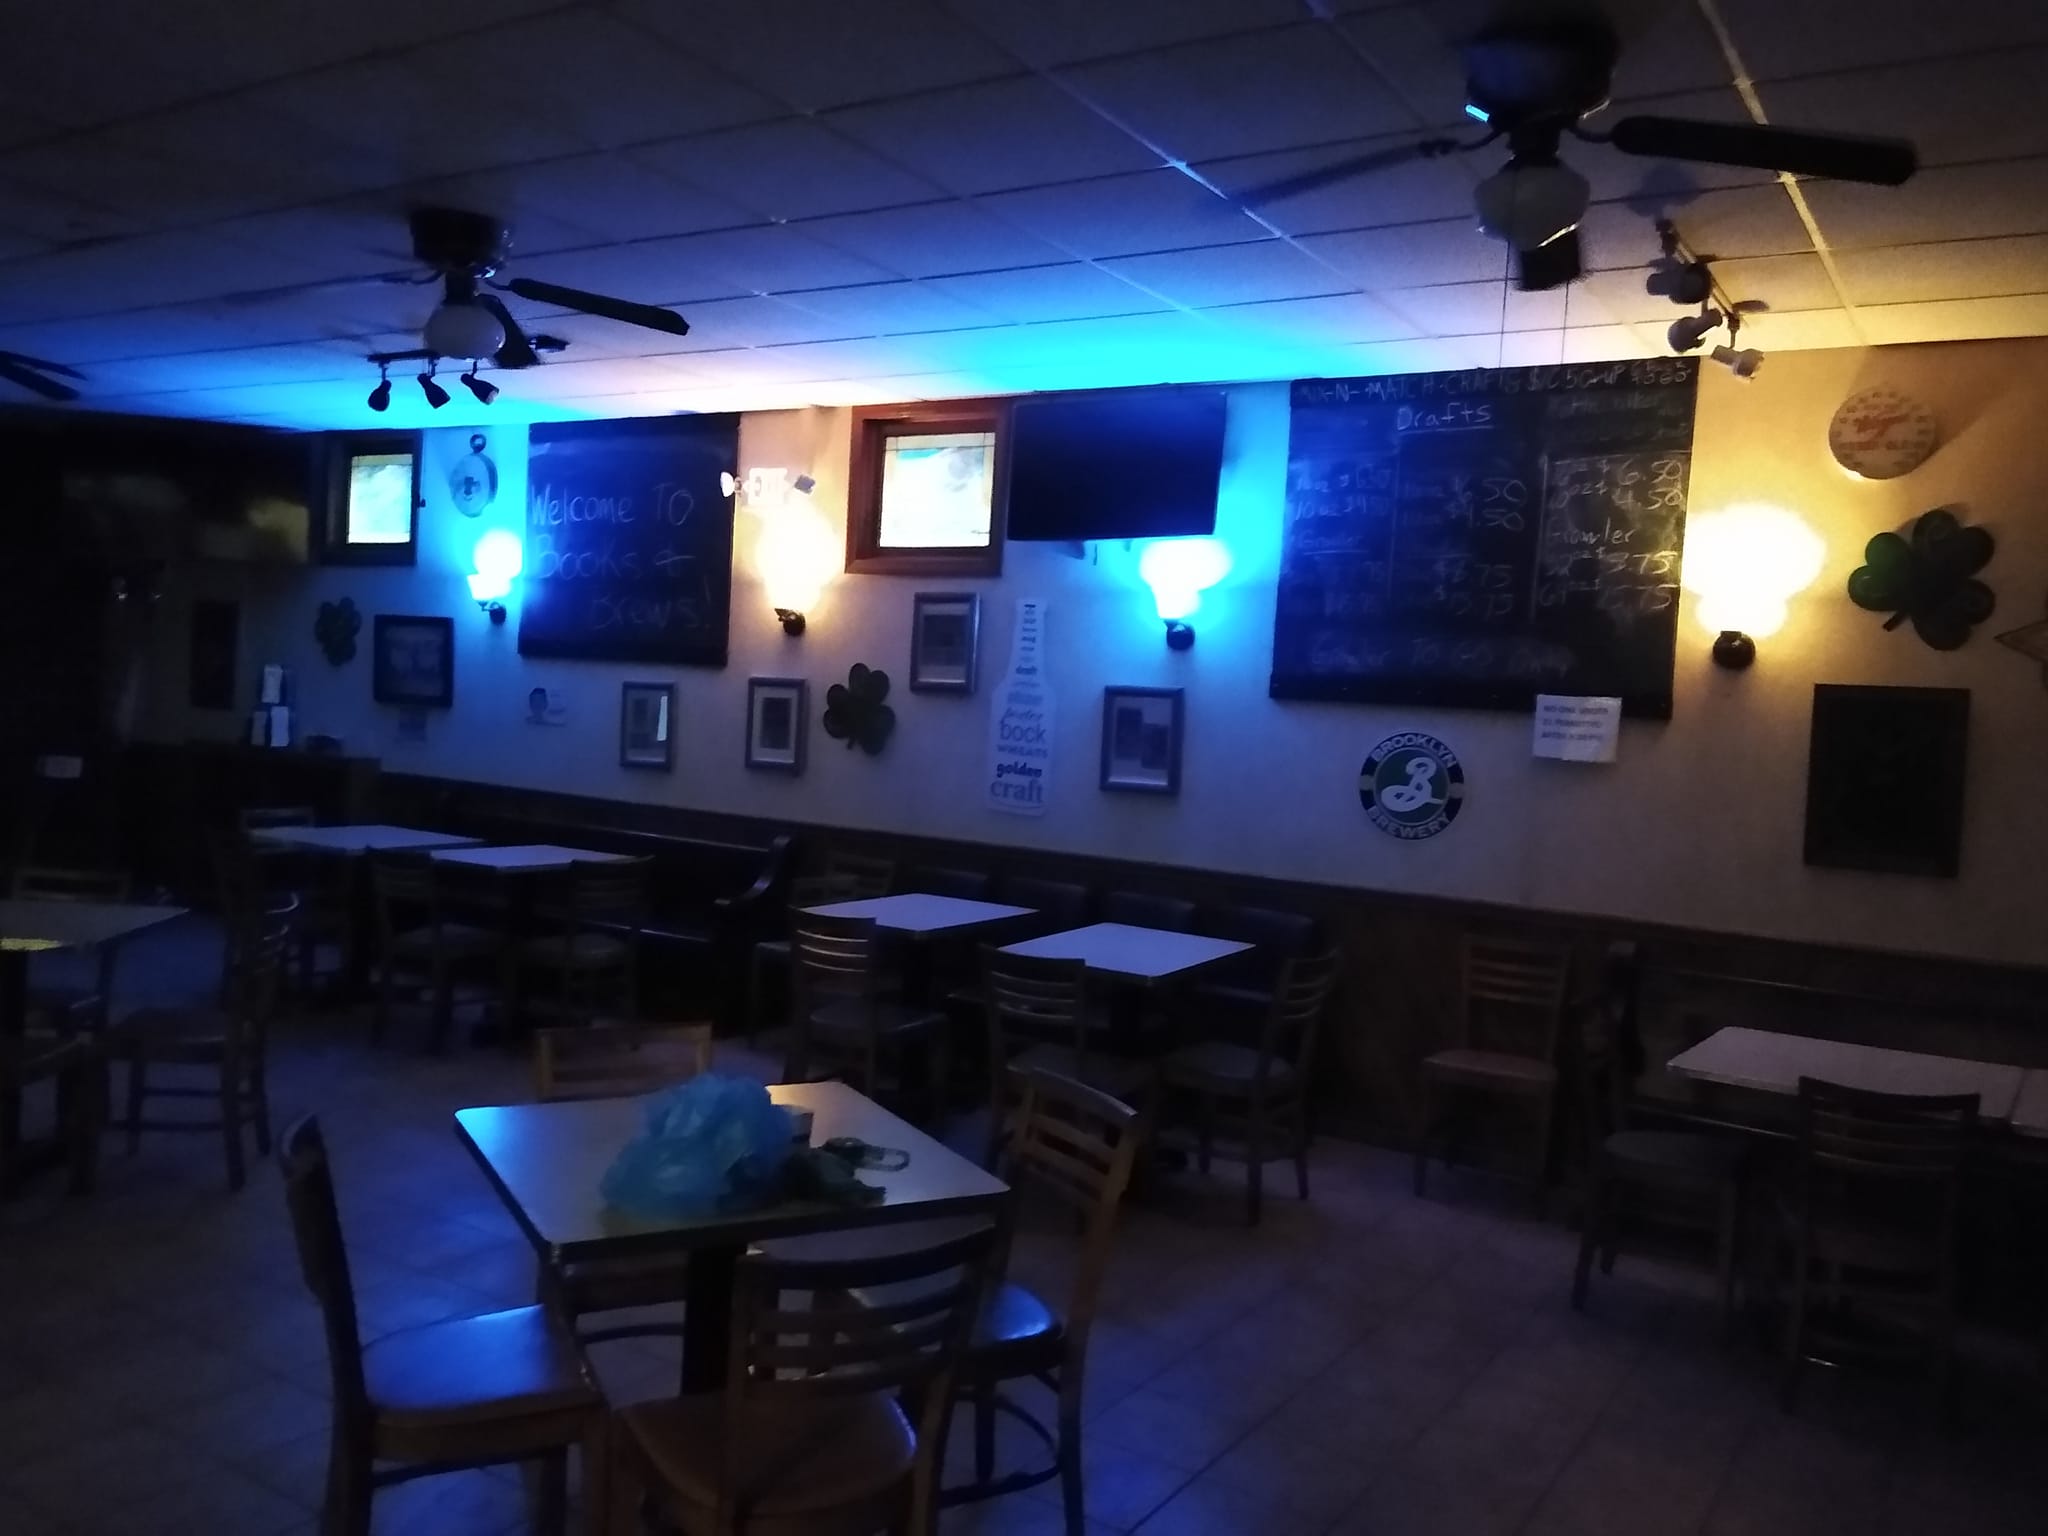 Scierka's Tavern